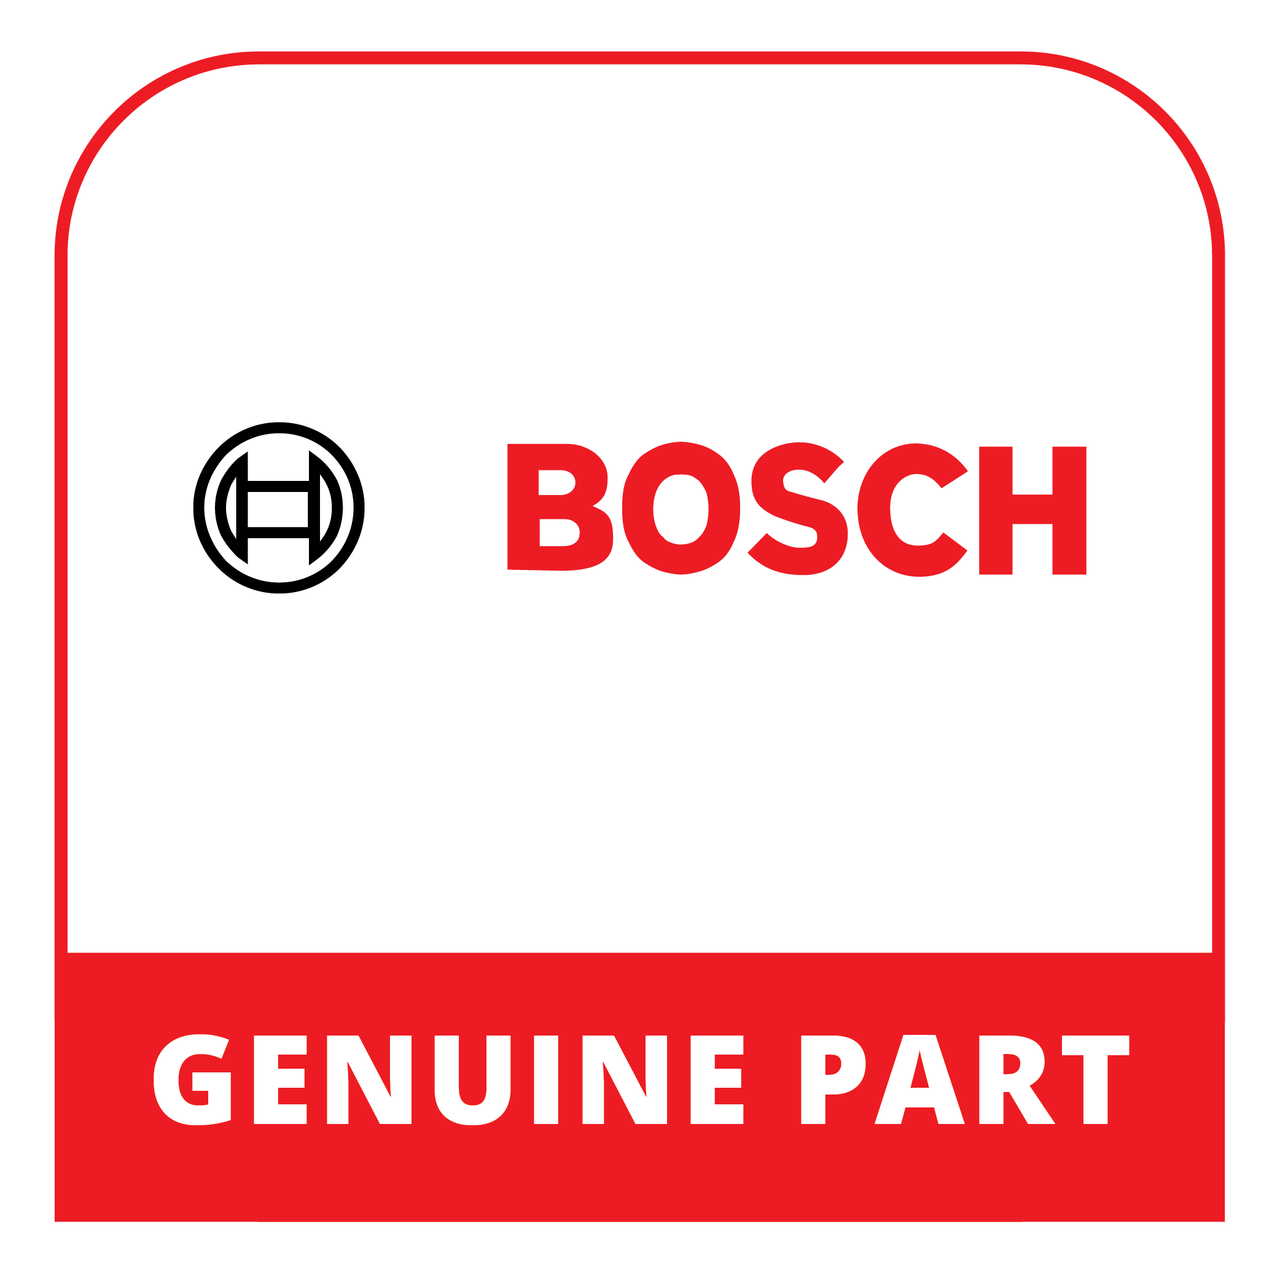 Bosch (Thermador) 23002233 - Door - Genuine Bosch (Thermador) Part